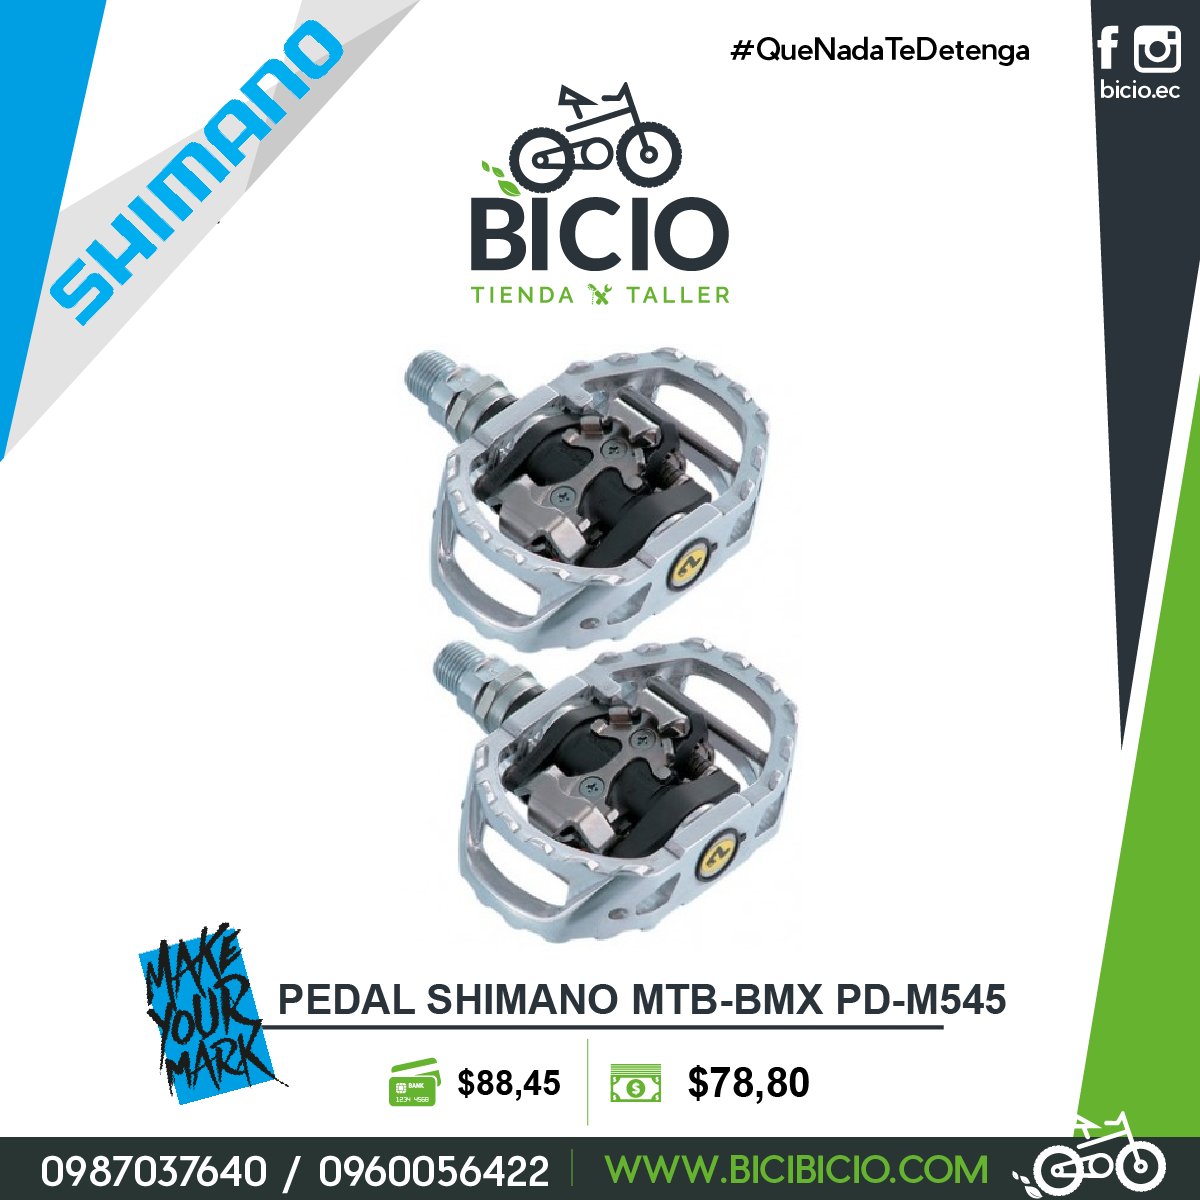 Pedales Shimano MTB-BMX PD-M545 - Bicio tienda - taller de bicicletas